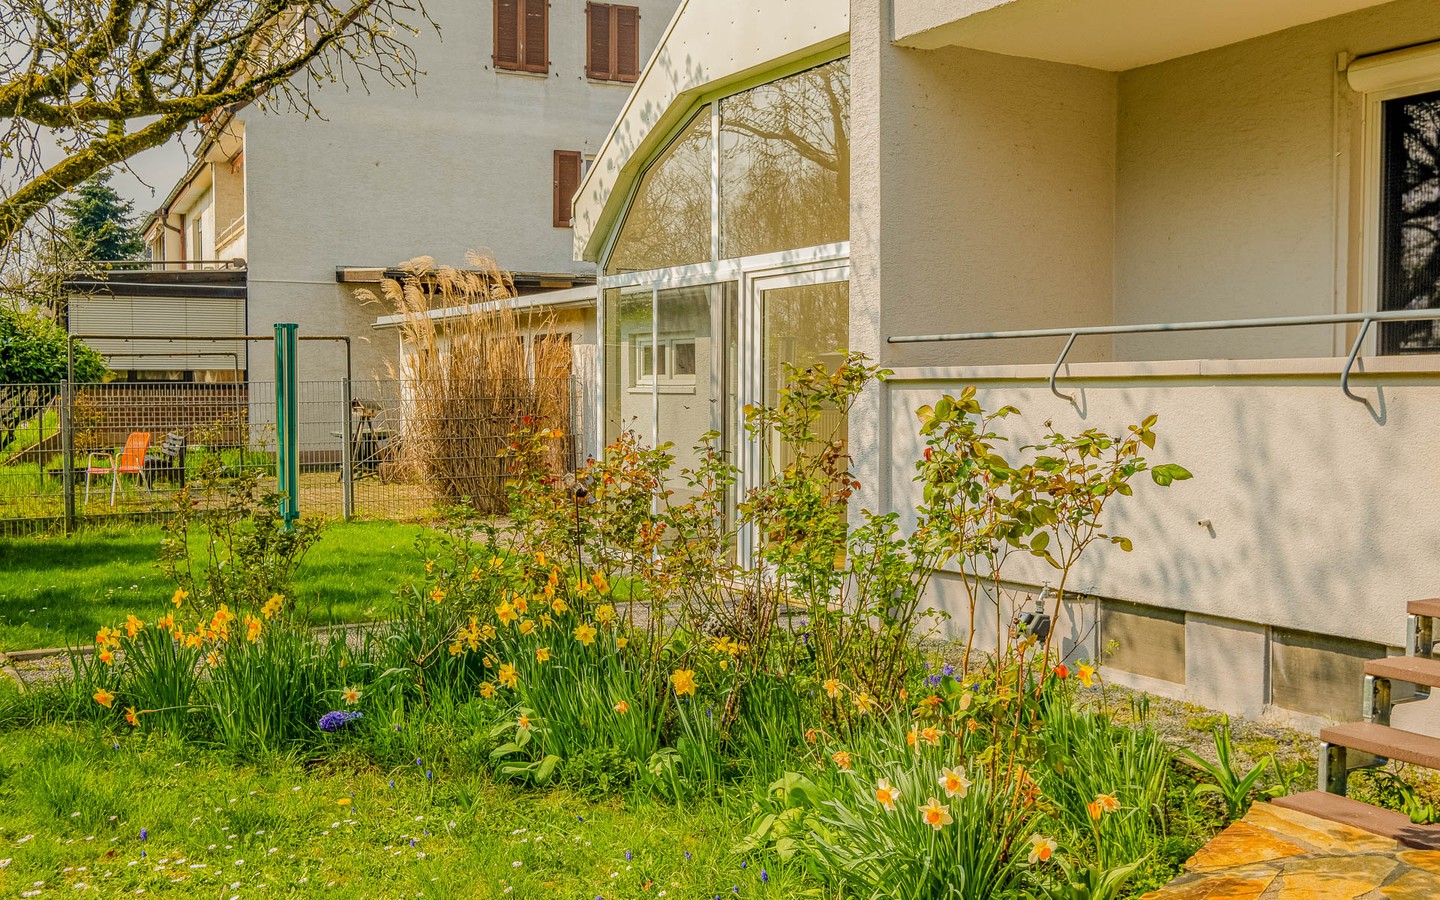 Garten - Auf Erbpachtgrundstück: 3-Parteienhaus mit Garten, Garagen und vielfältigen Nutzungsmöglichkeiten